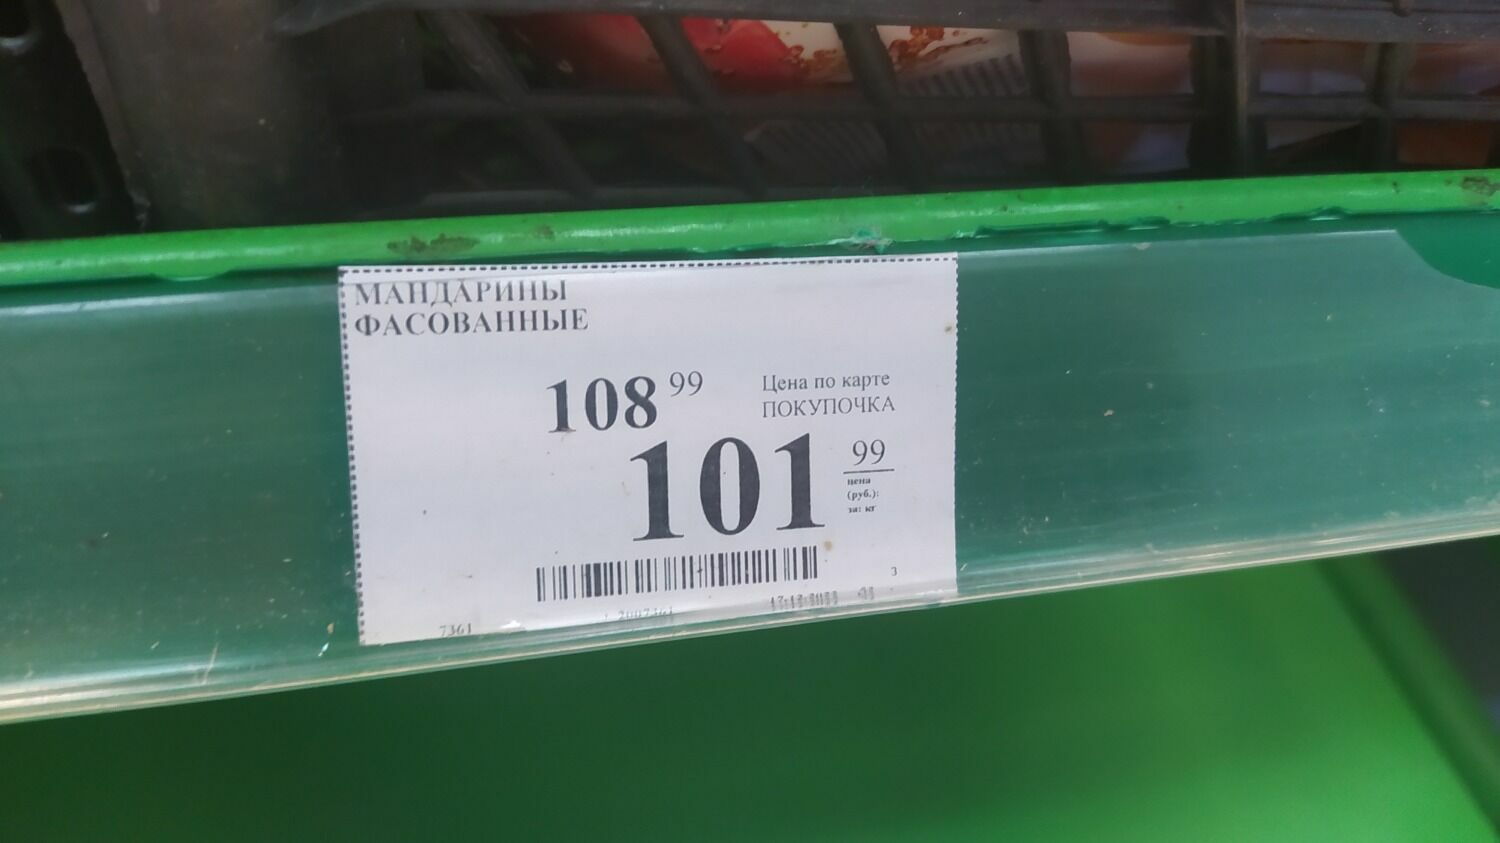 В волгоградской торговой сети «Покупочка» в продаже только два вида мандаринов